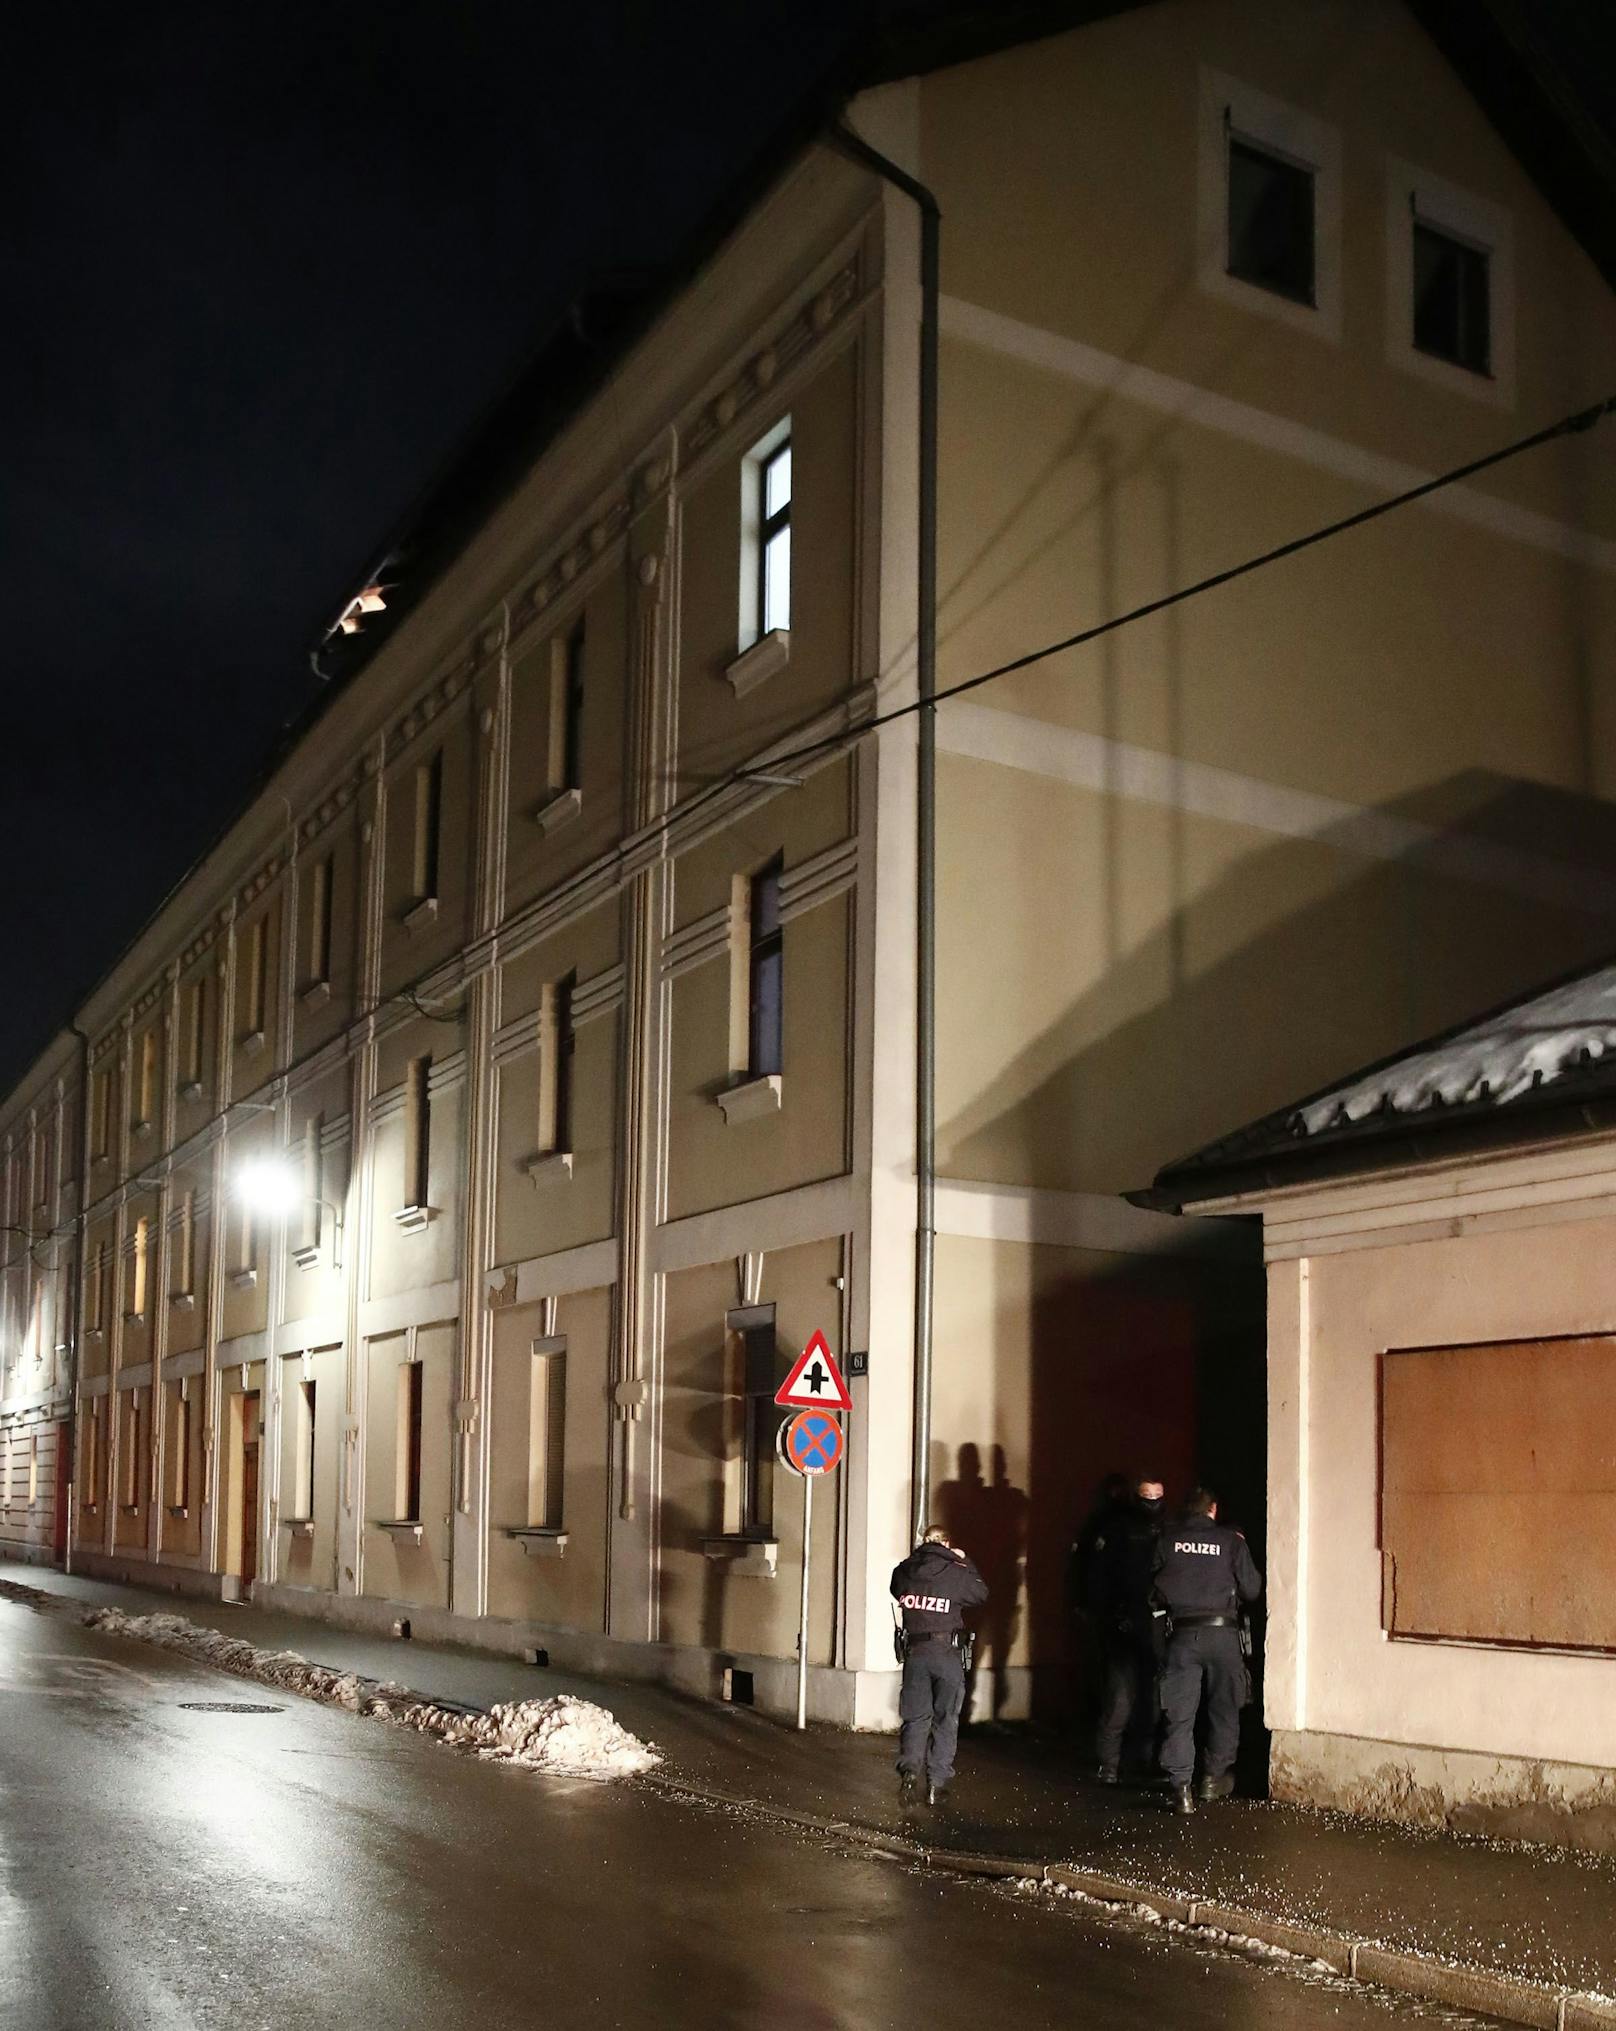 Cobra-Einsatz am Freitag in Kärnten! In Klagenfurt ist es zu einer Messer-Attacke auf einen Mann gekommen. Der Täter ist noch auf der Flucht.